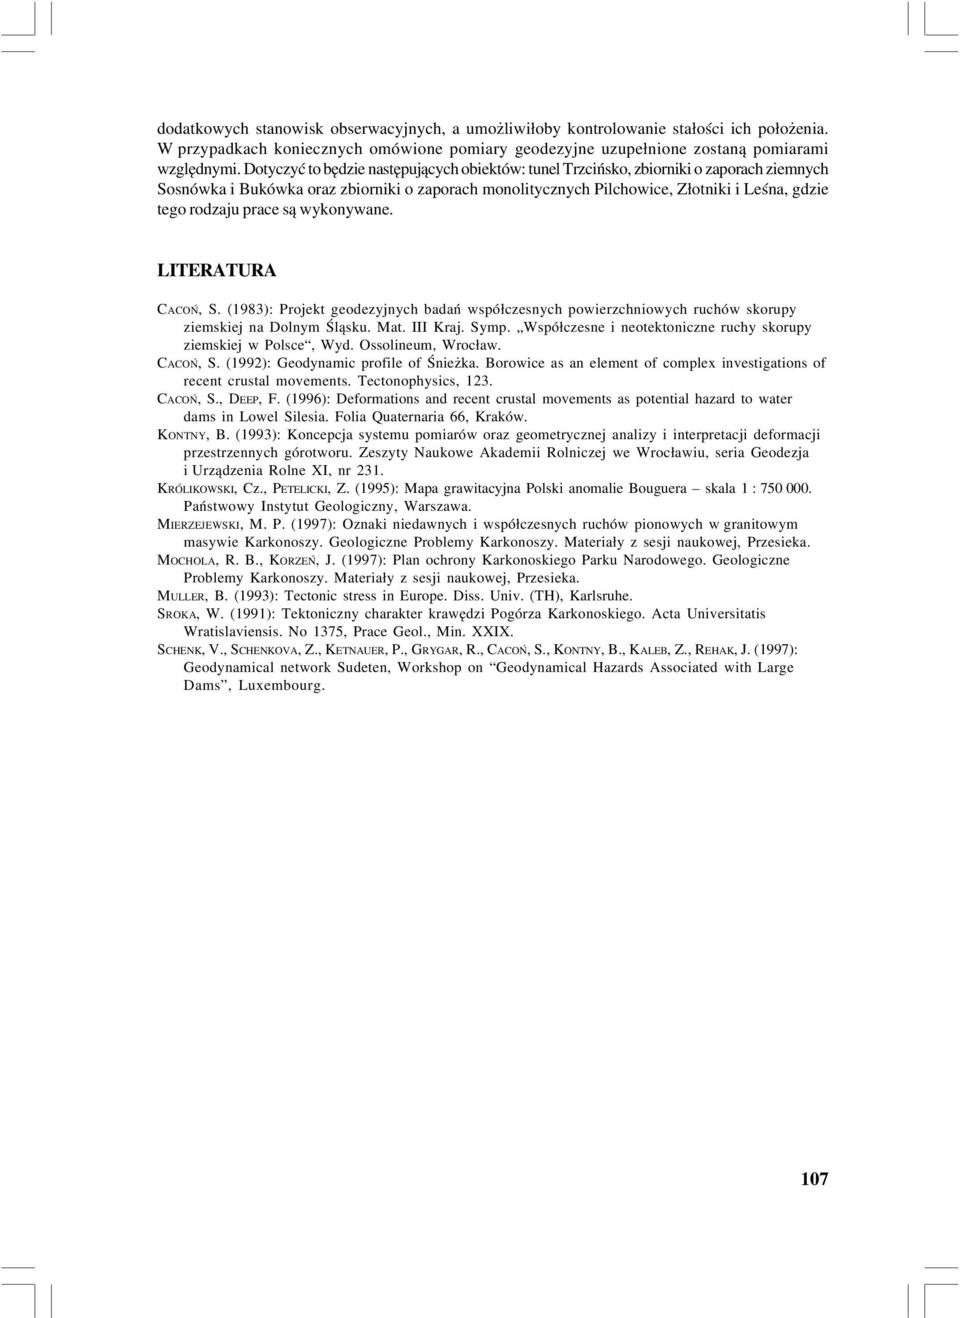 prace są wykonywane. LITERATURA CACOŃ, S. (1983): Projekt geodezyjnych badań współczesnych powierzchniowych ruchów skorupy ziemskiej na olnym Śląsku. Mat. III Kraj. Symp.